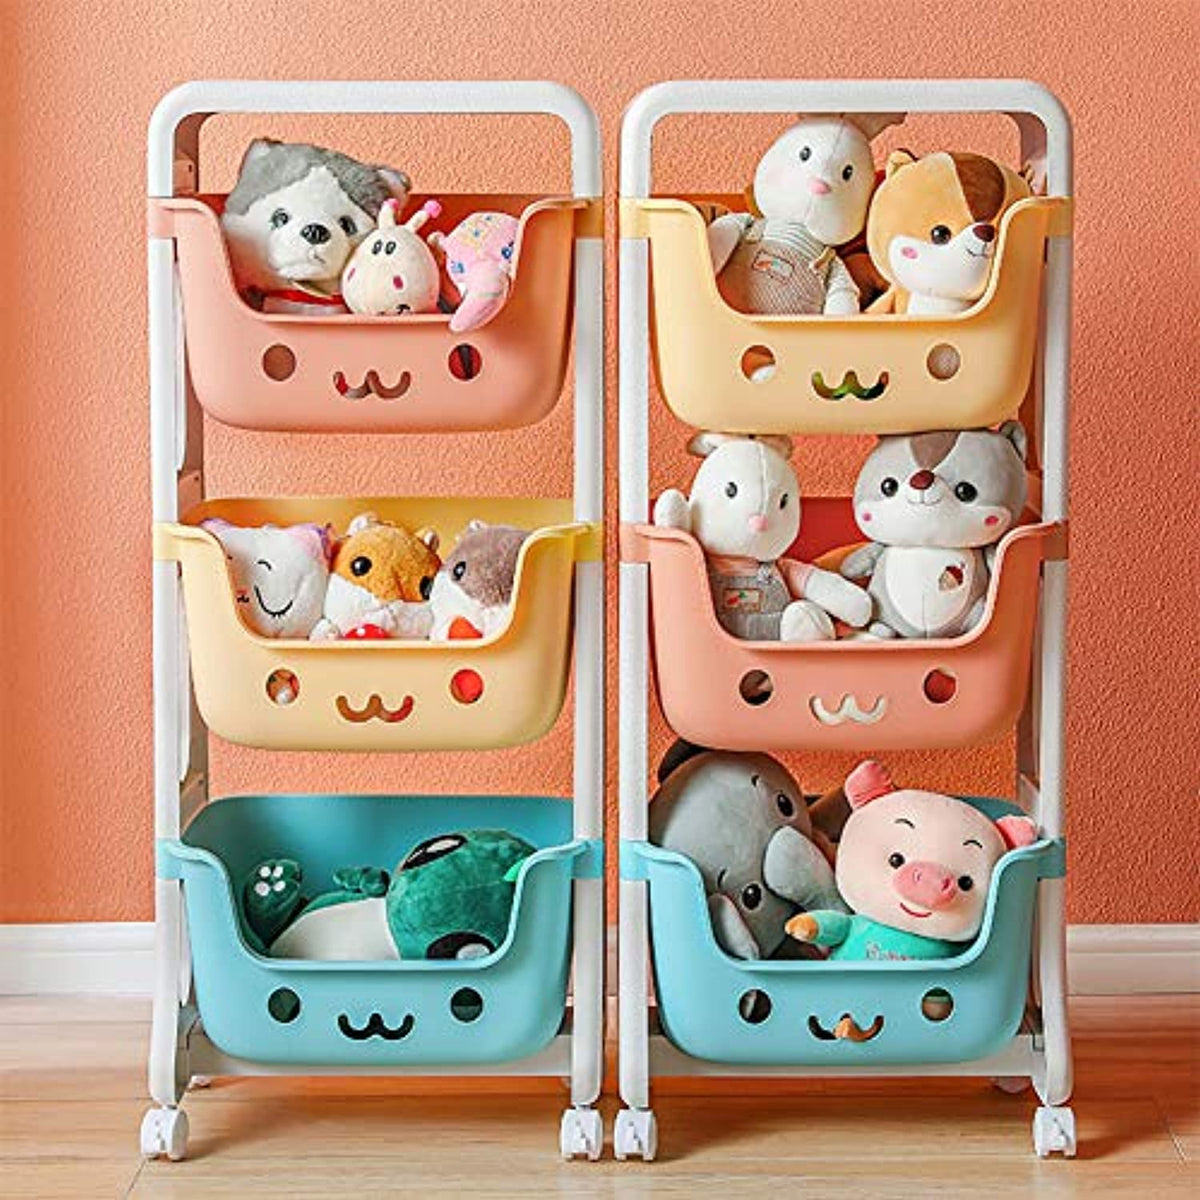 Organizador de almacenamiento de juguetes para niños, carrito apilable de 3  niveles, colores juguetones sonrientes, decoración de sala de juegos para